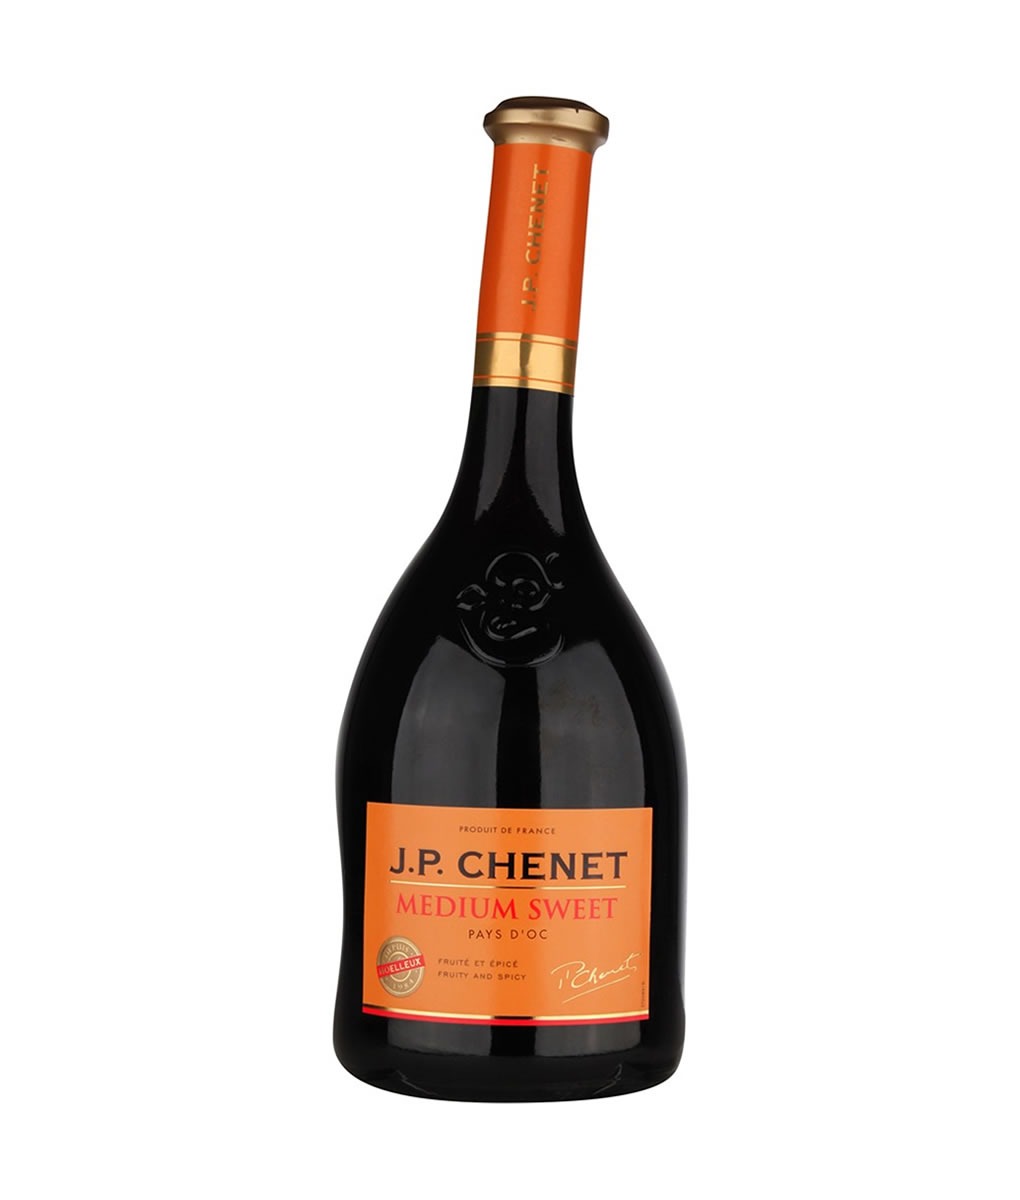 Medium sweet вино. Jp CHENET вино красное.